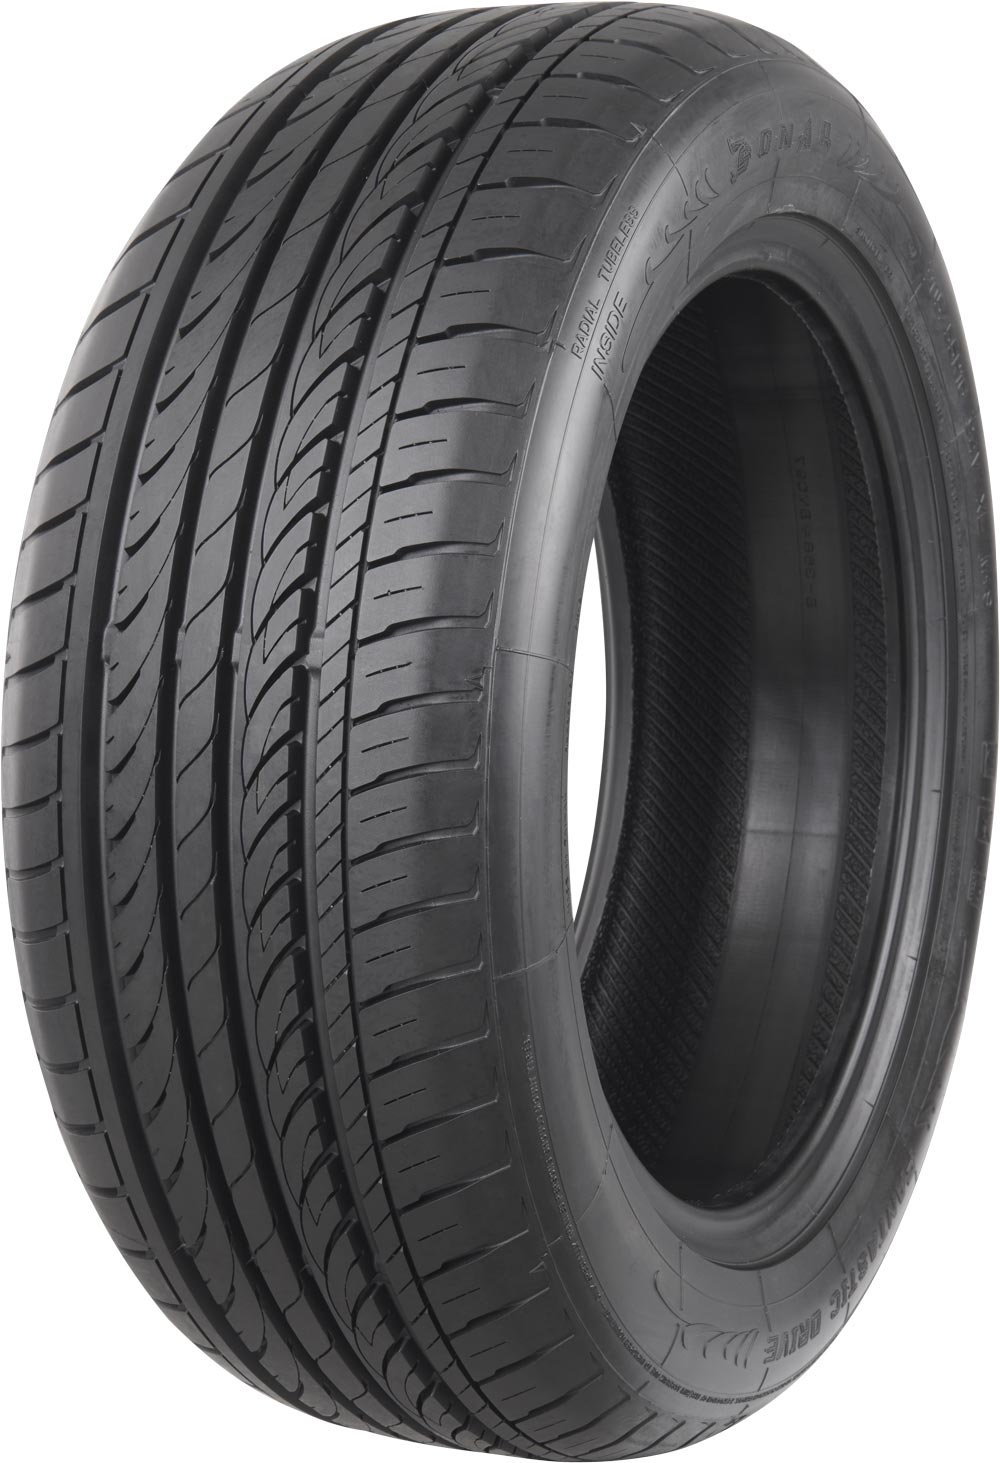 Автомобилни гуми SONAR SX-2 245/45 R17 95W